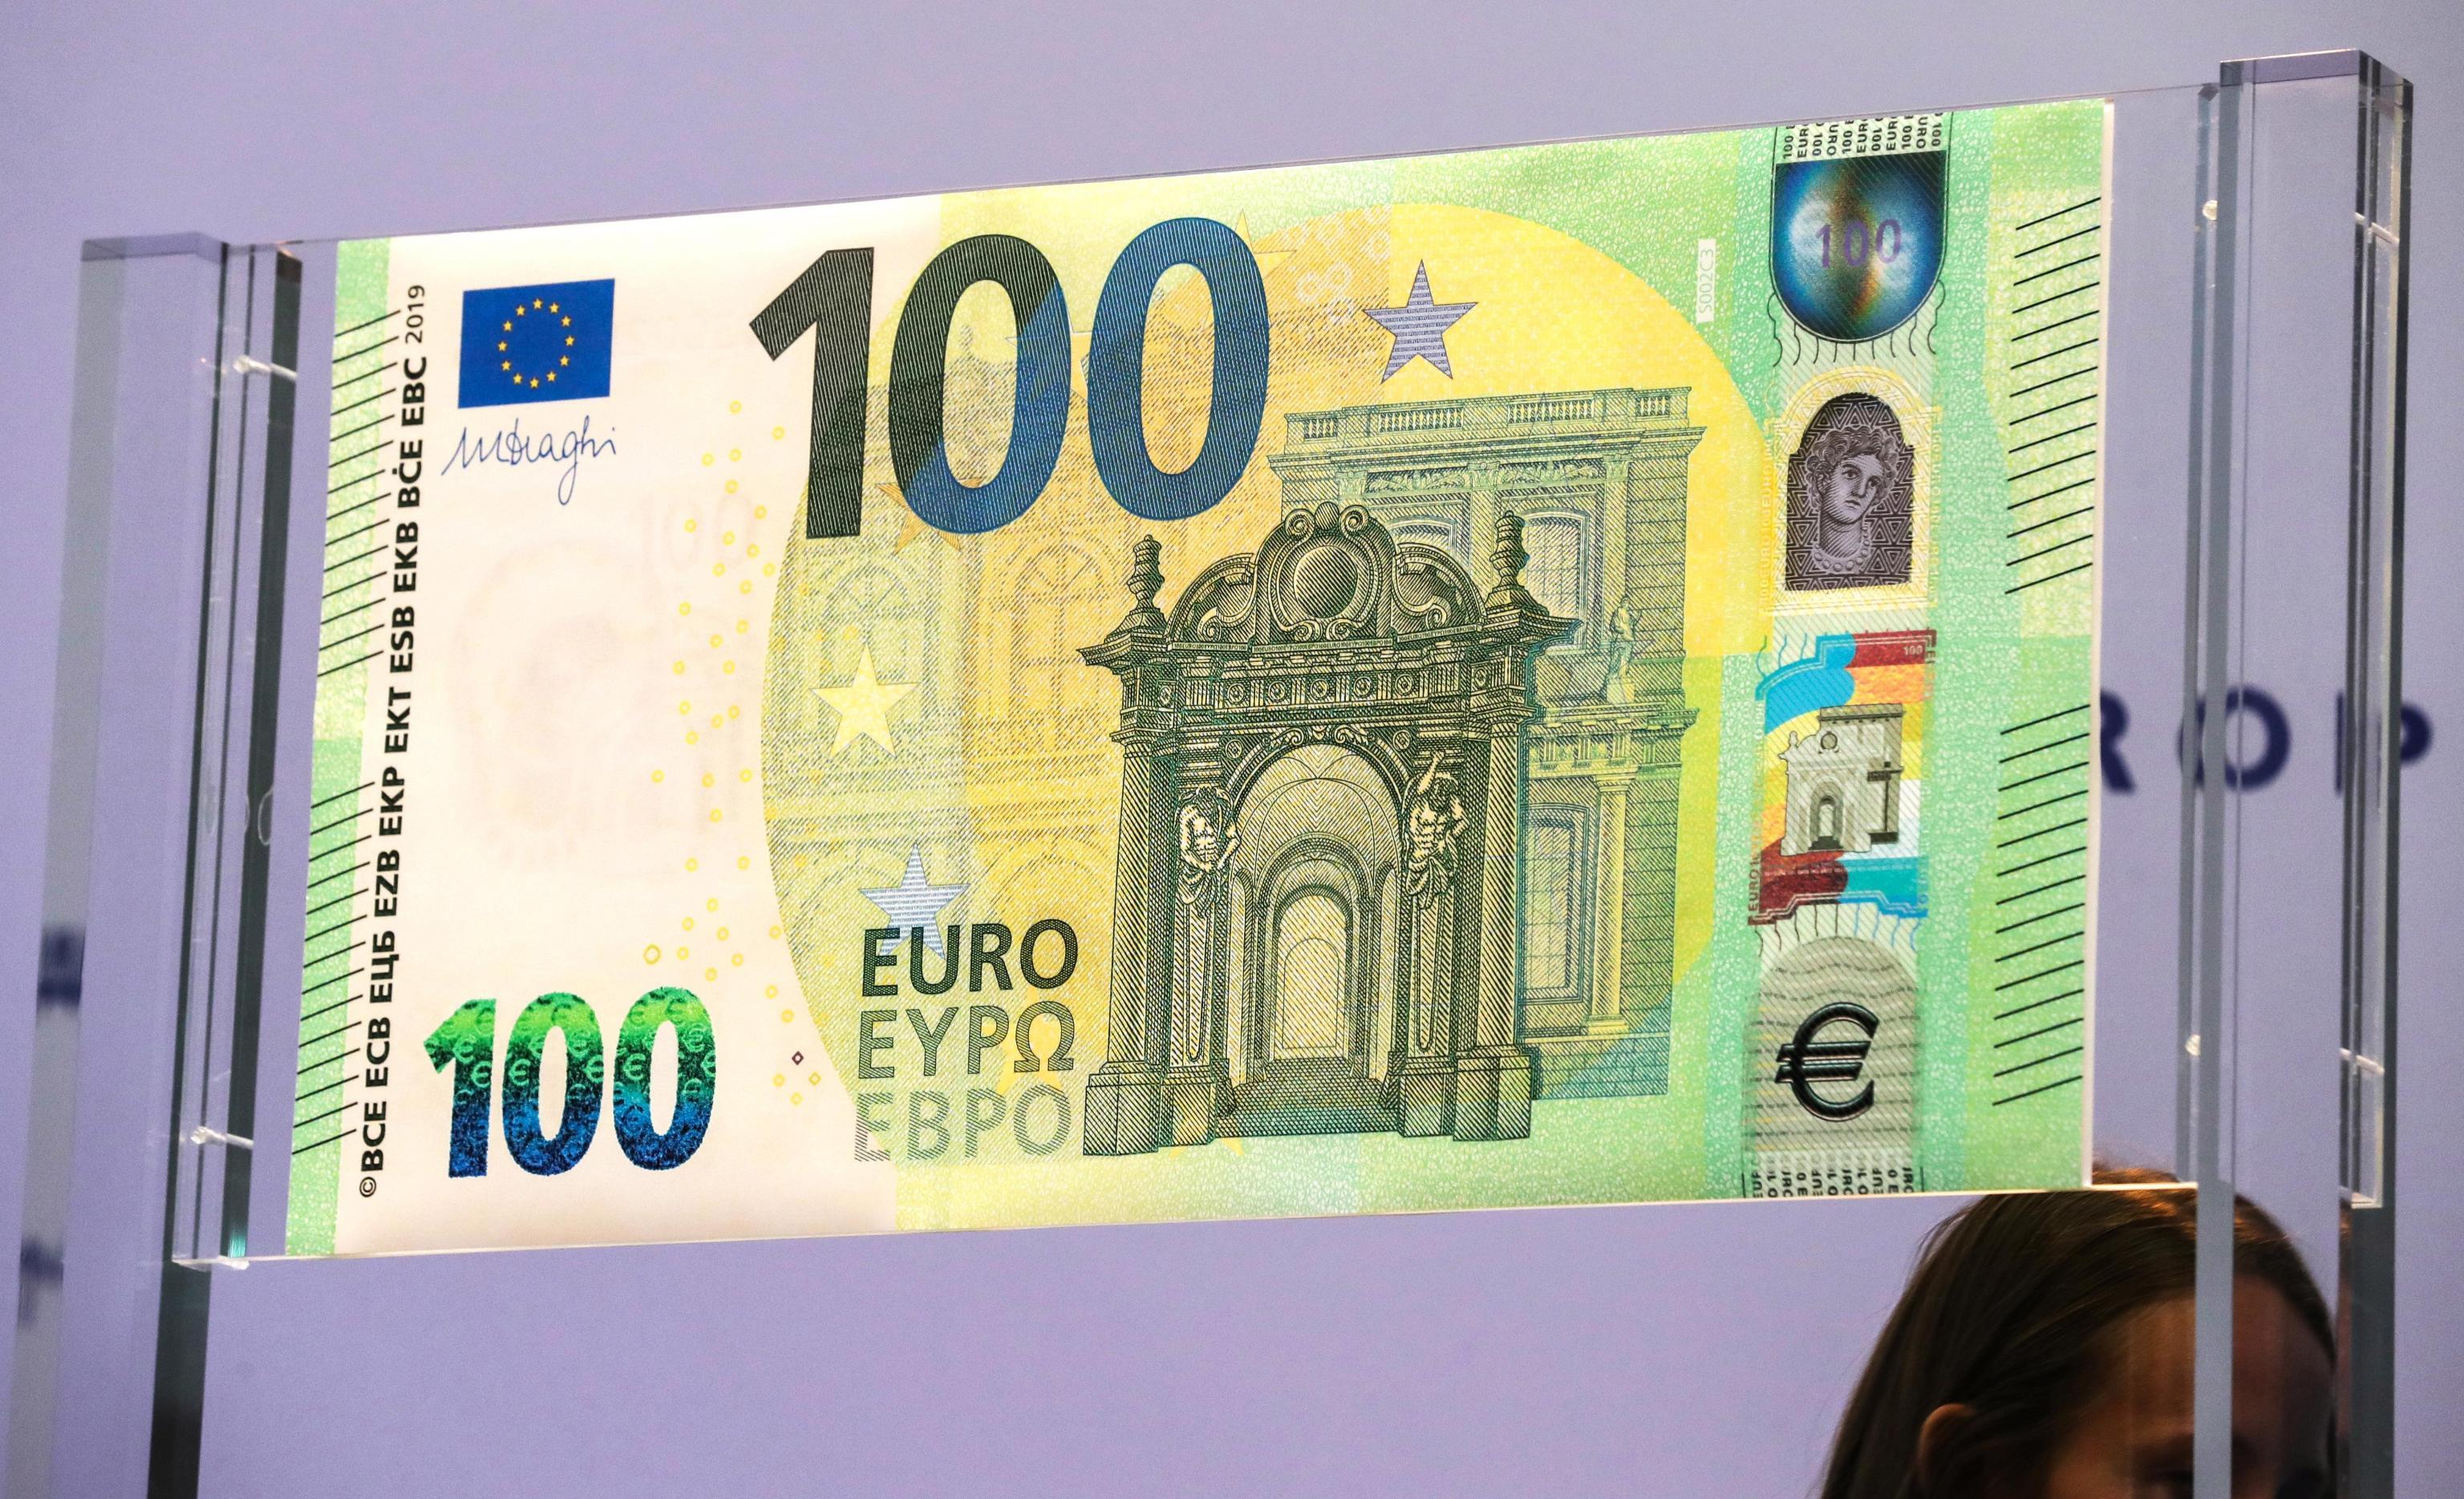 Евро старые купюры. Евро купюры 100 евро. Новая купюра 100 евро. Купюра 100 евро нового образца. Купюра 100 евро фотографии.